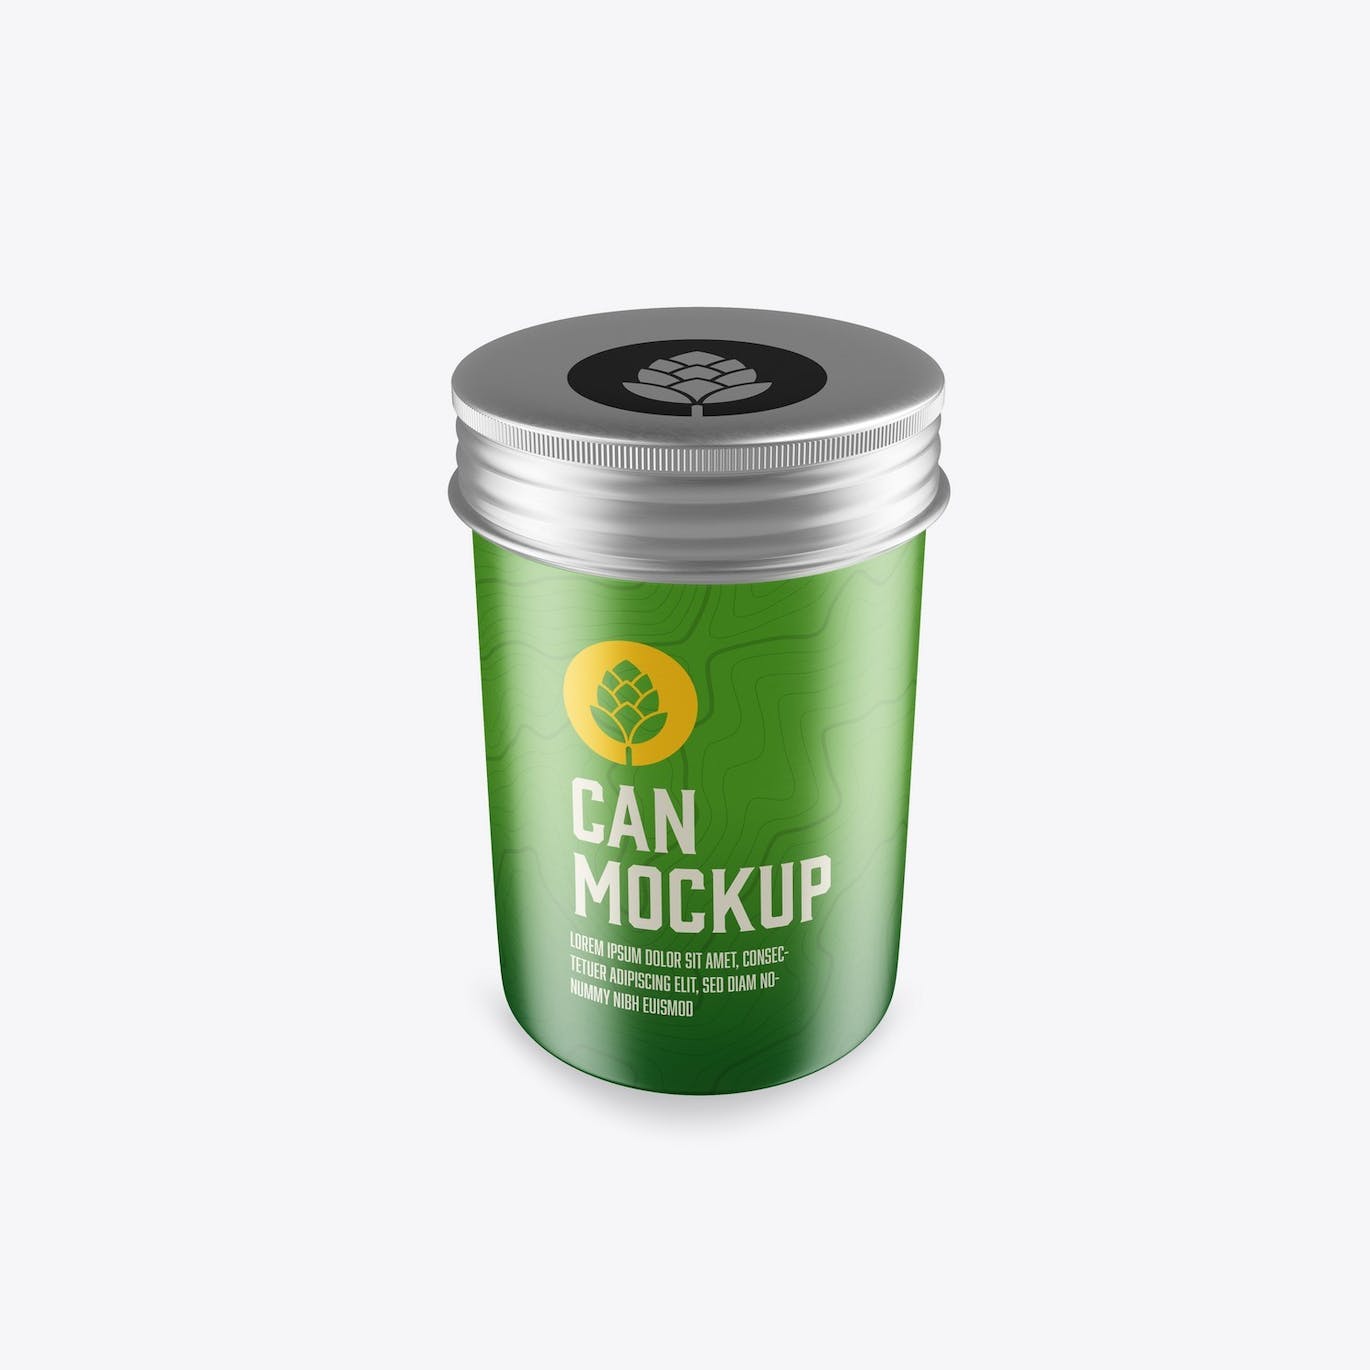 拧盖锡罐包装设计样机 Set Colored Tin Mockup 样机素材 第3张